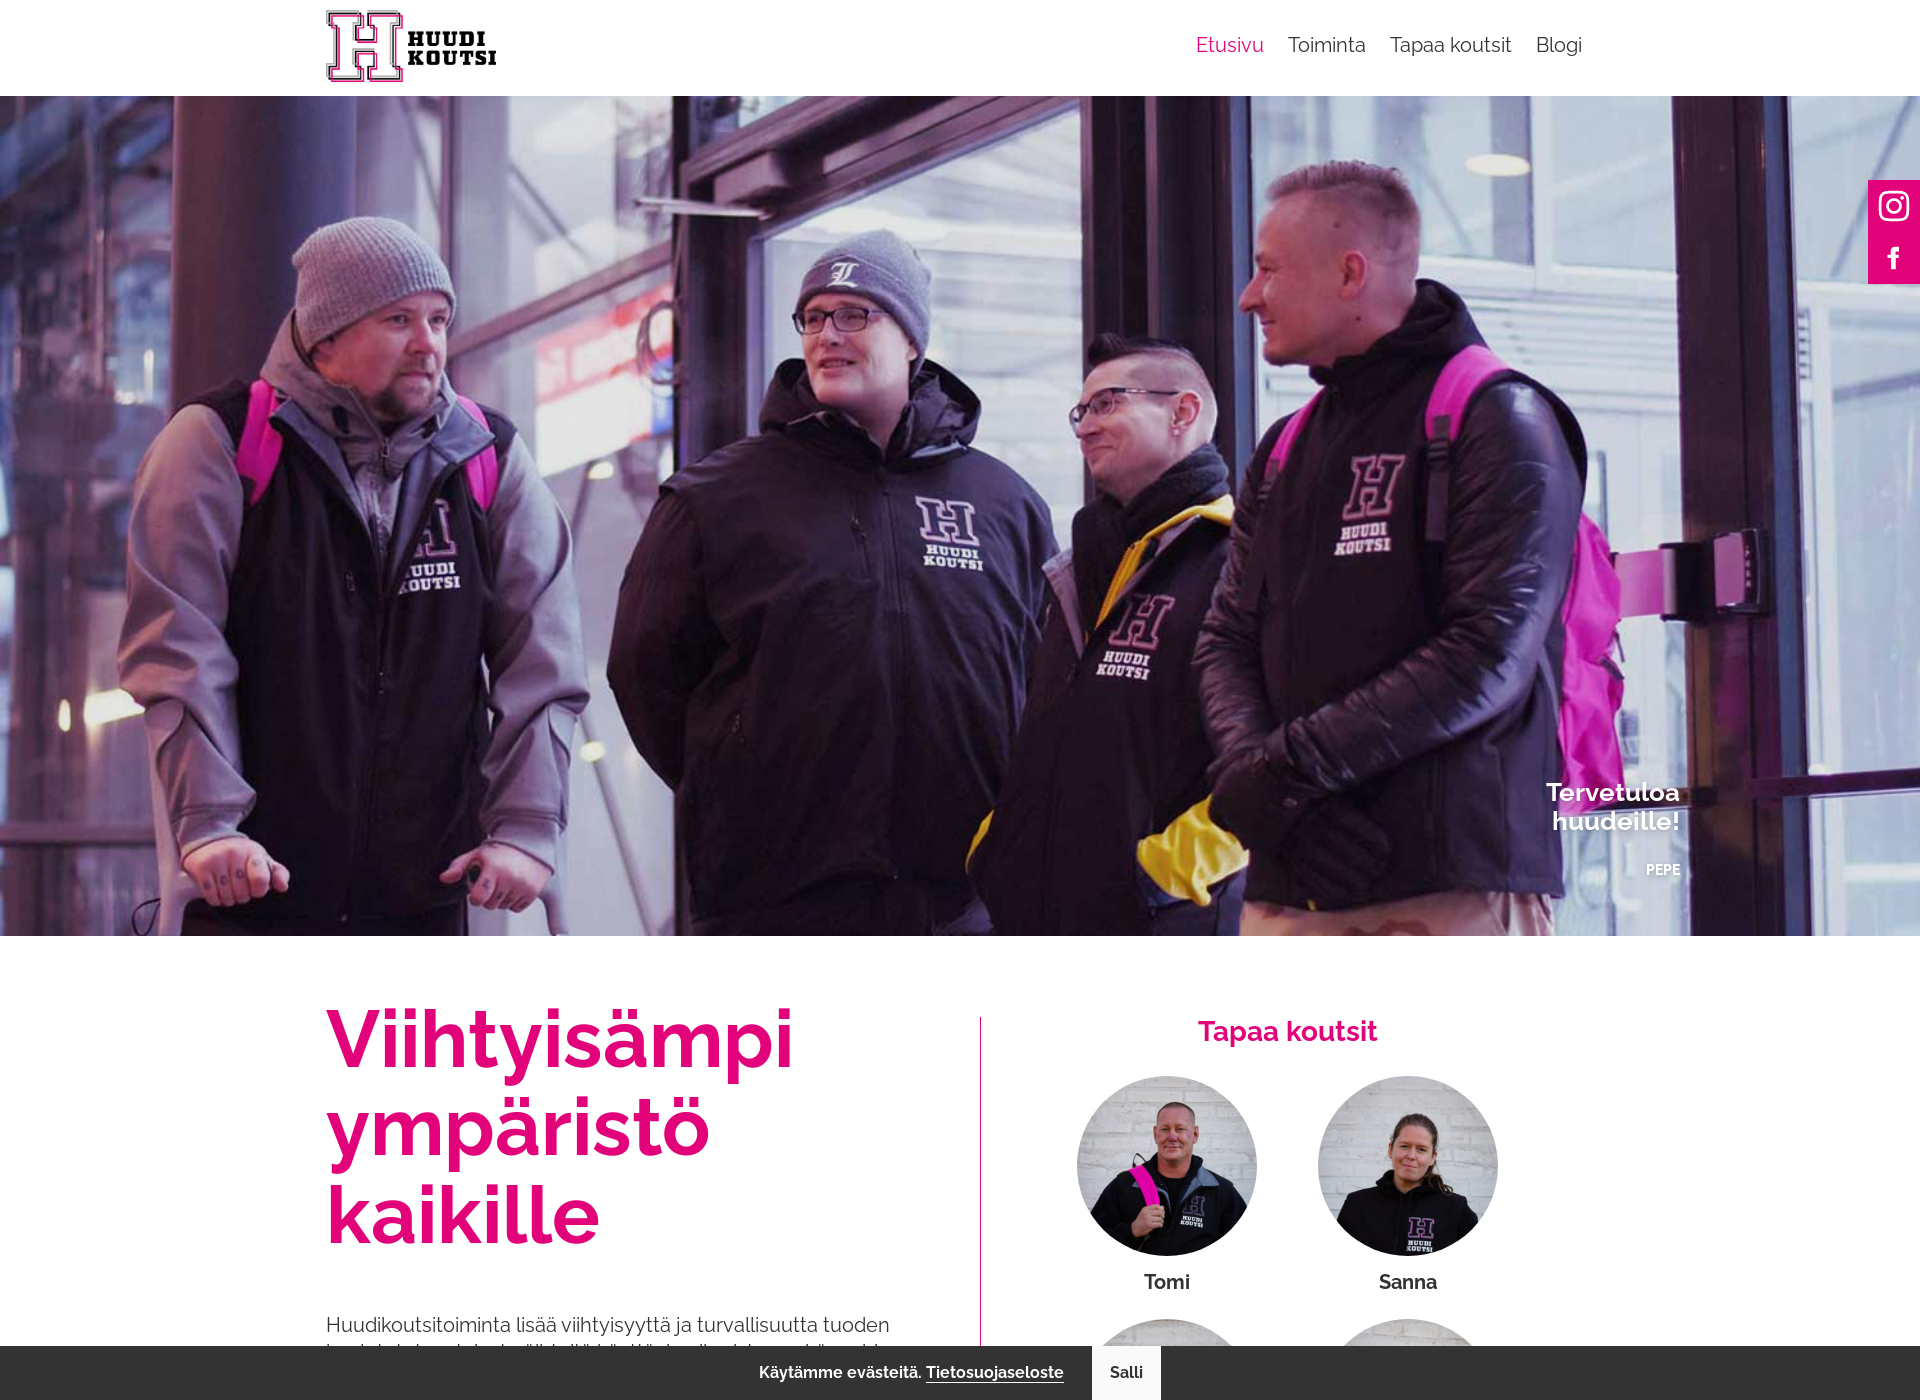 Näyttökuva huudikoutsit.fi